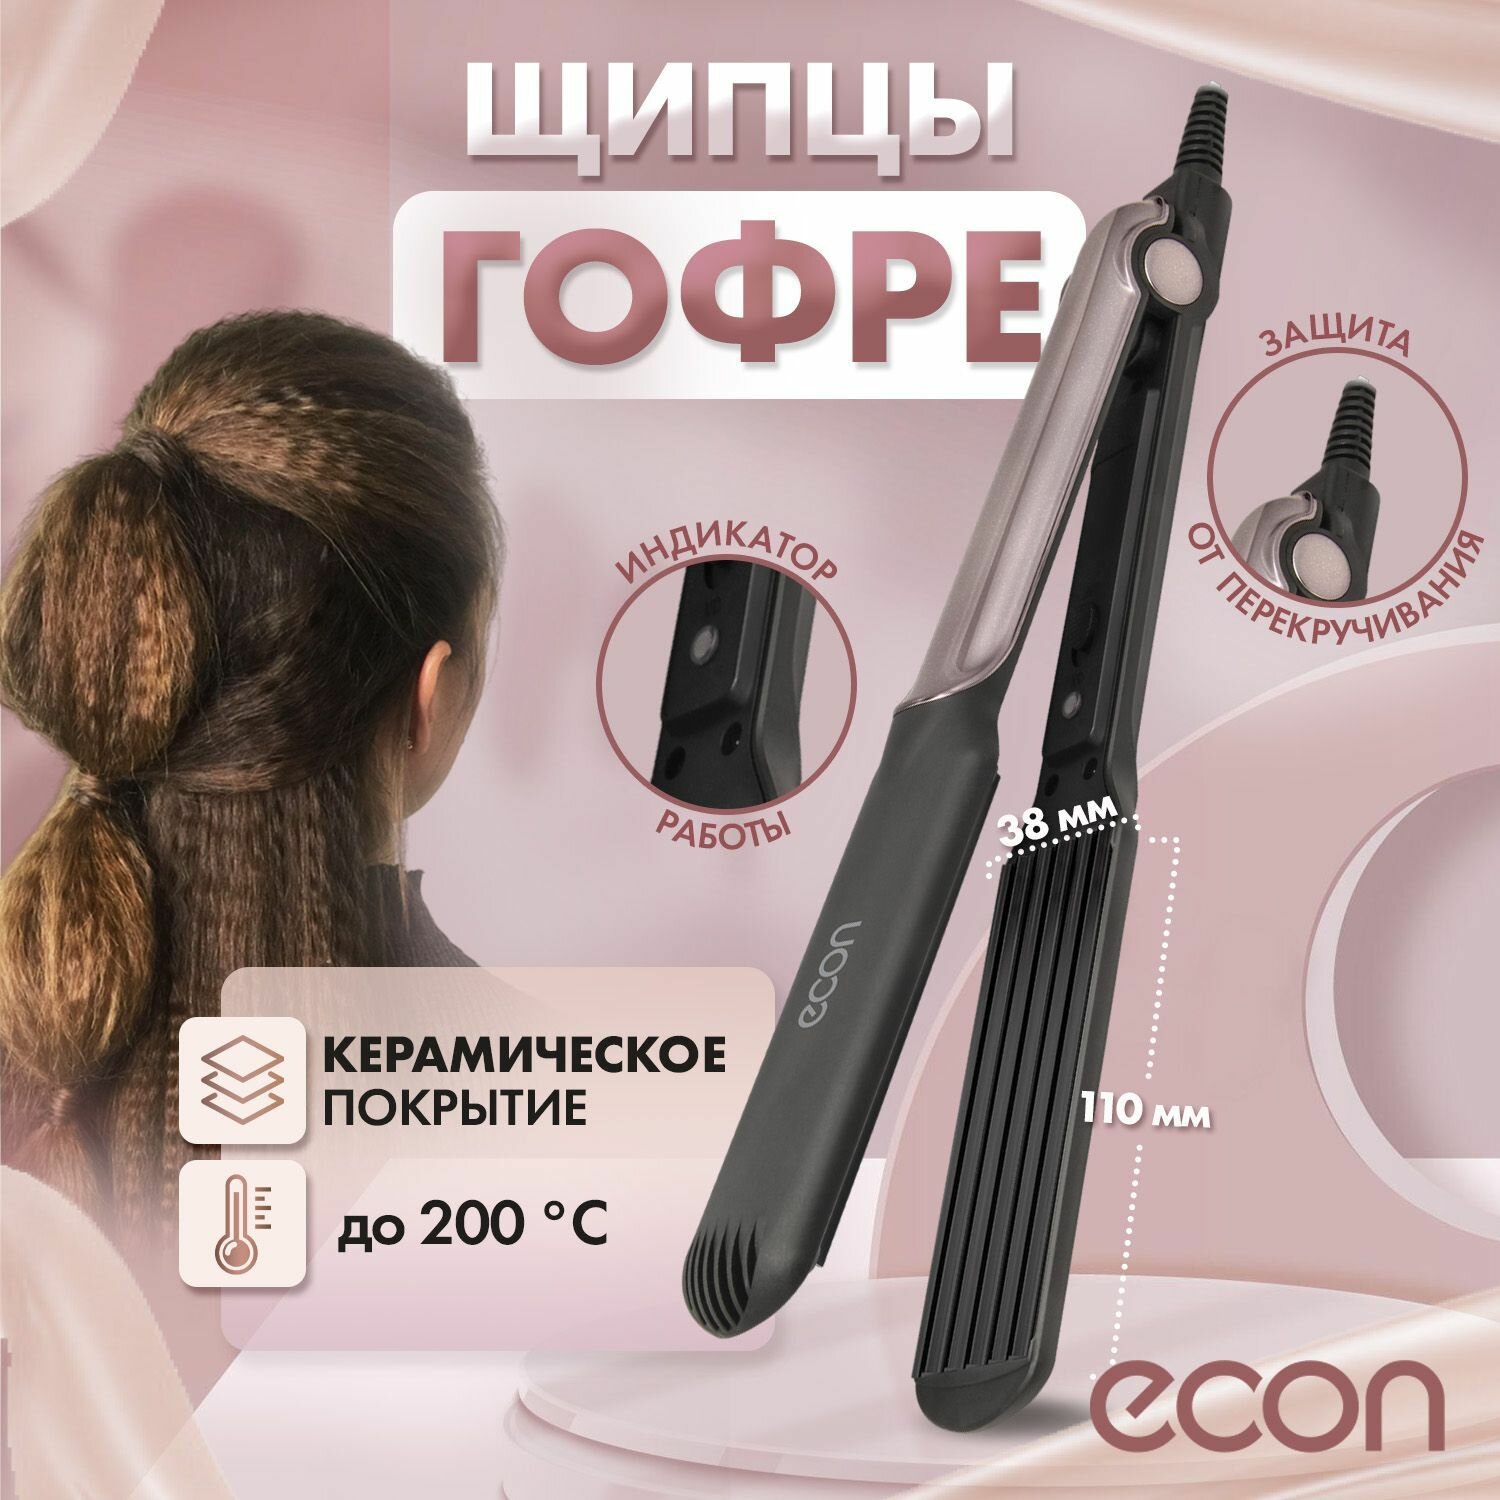 Щипцы гофре для прикорневого объема ECON ECO-BH004G электрощипцы для завивки волос, стайлер для укладки, с керамическими пластинами, черный/бежевый